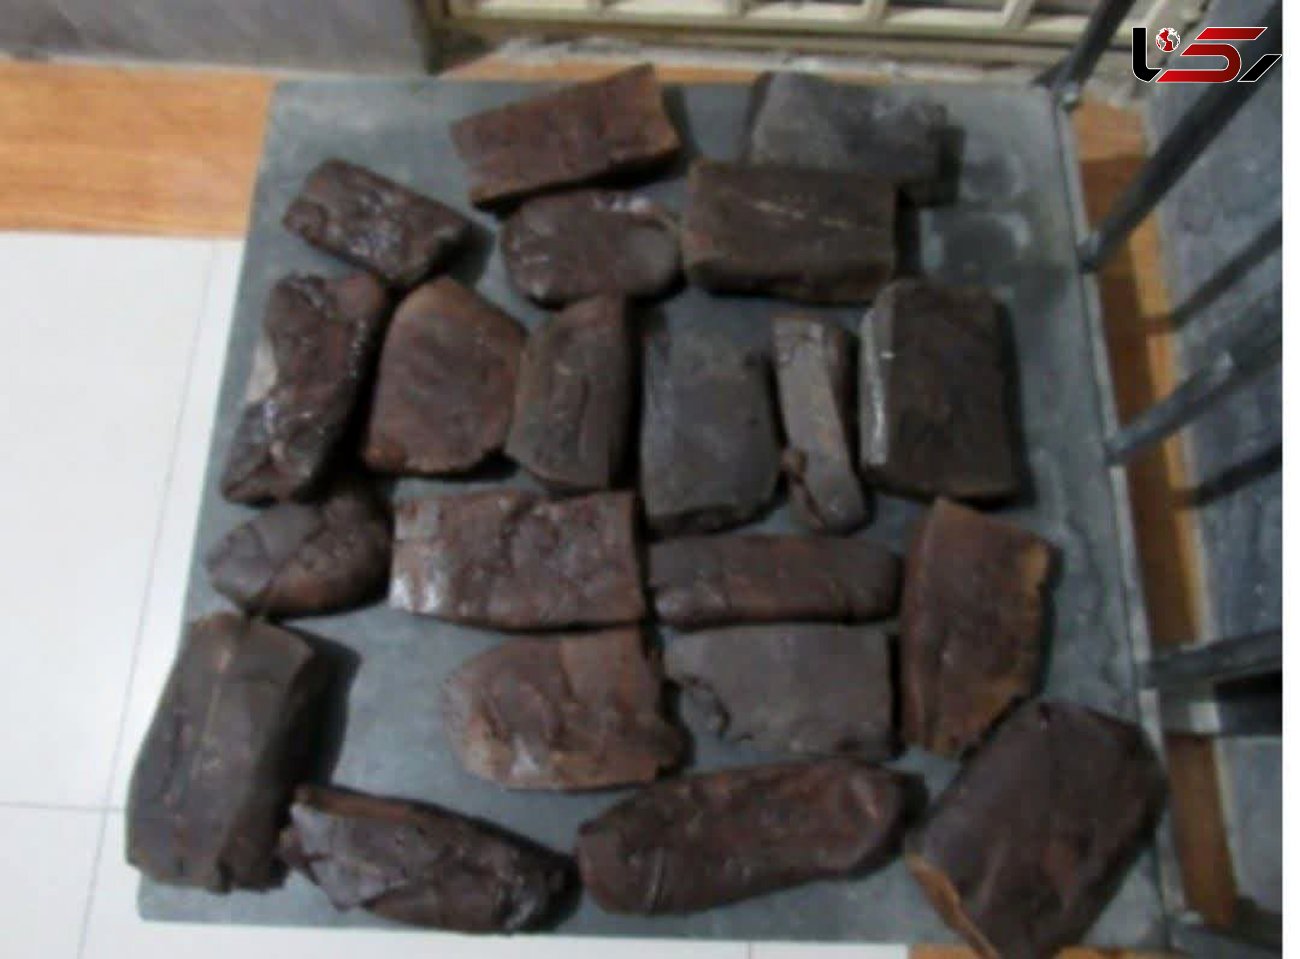 کشف بیش از 19 کیلو گرم تریاک و حشیش در "خرمشهر"